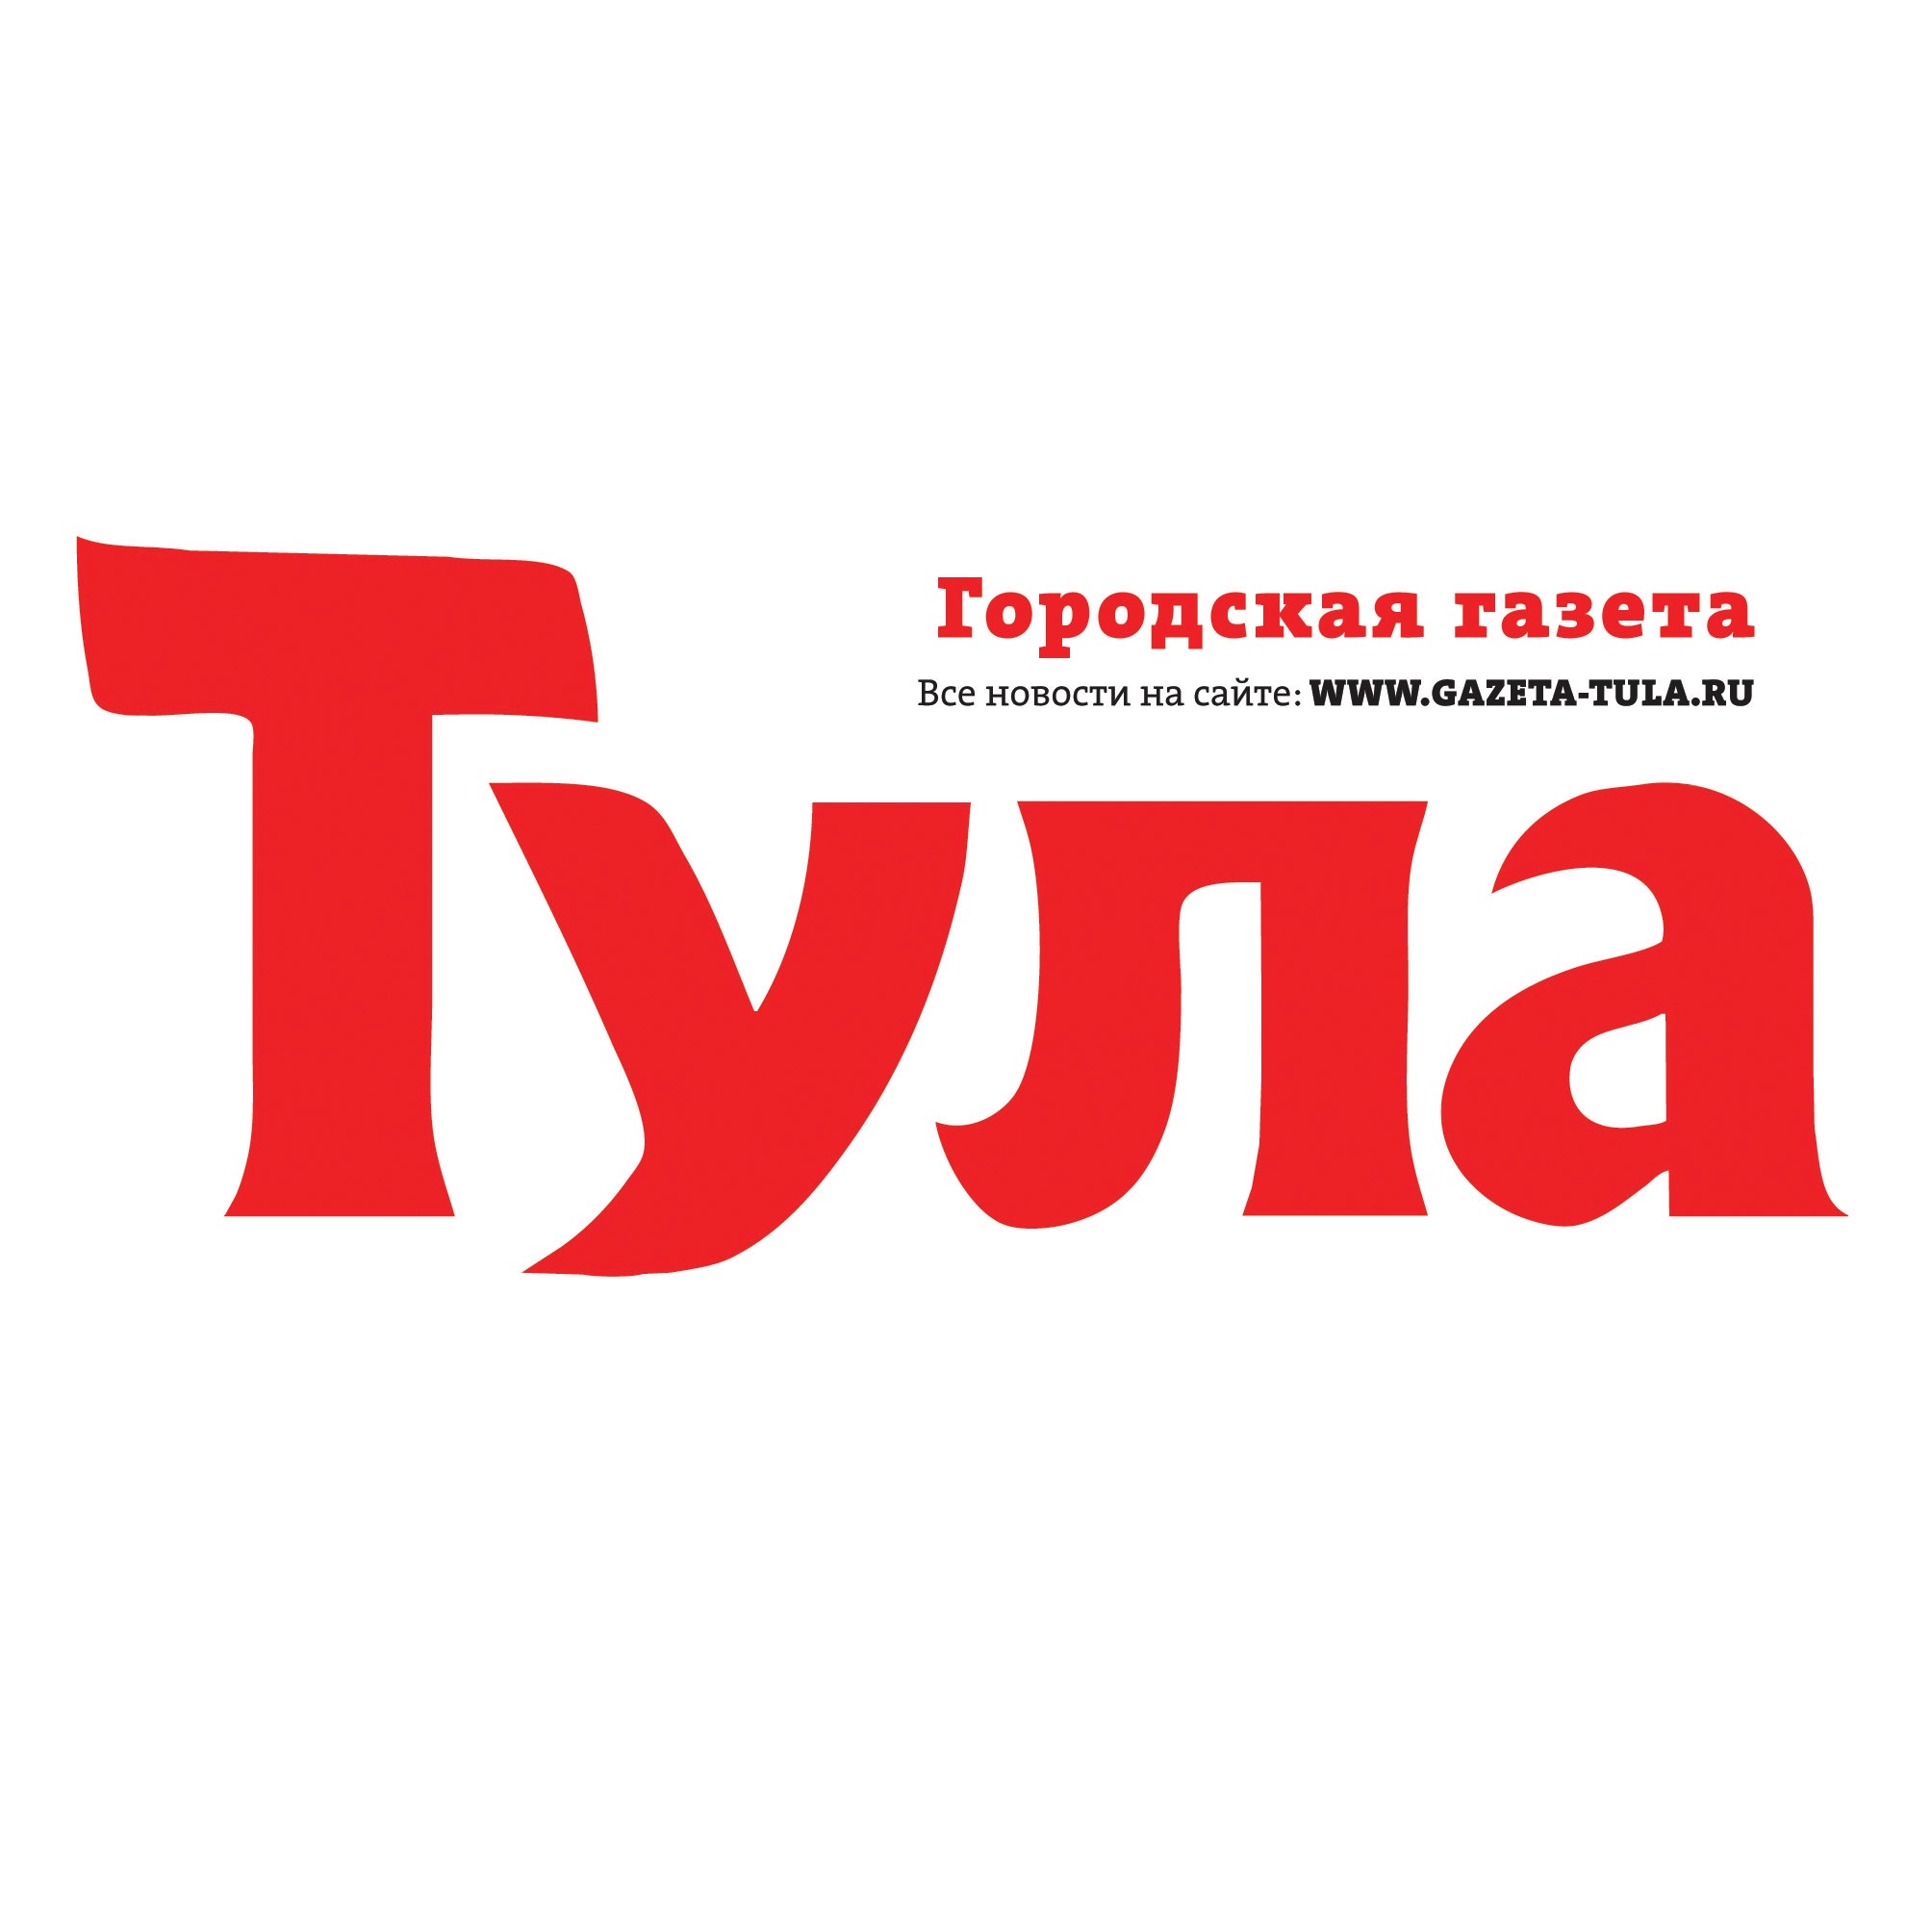 http://gazeta-tula.ru/